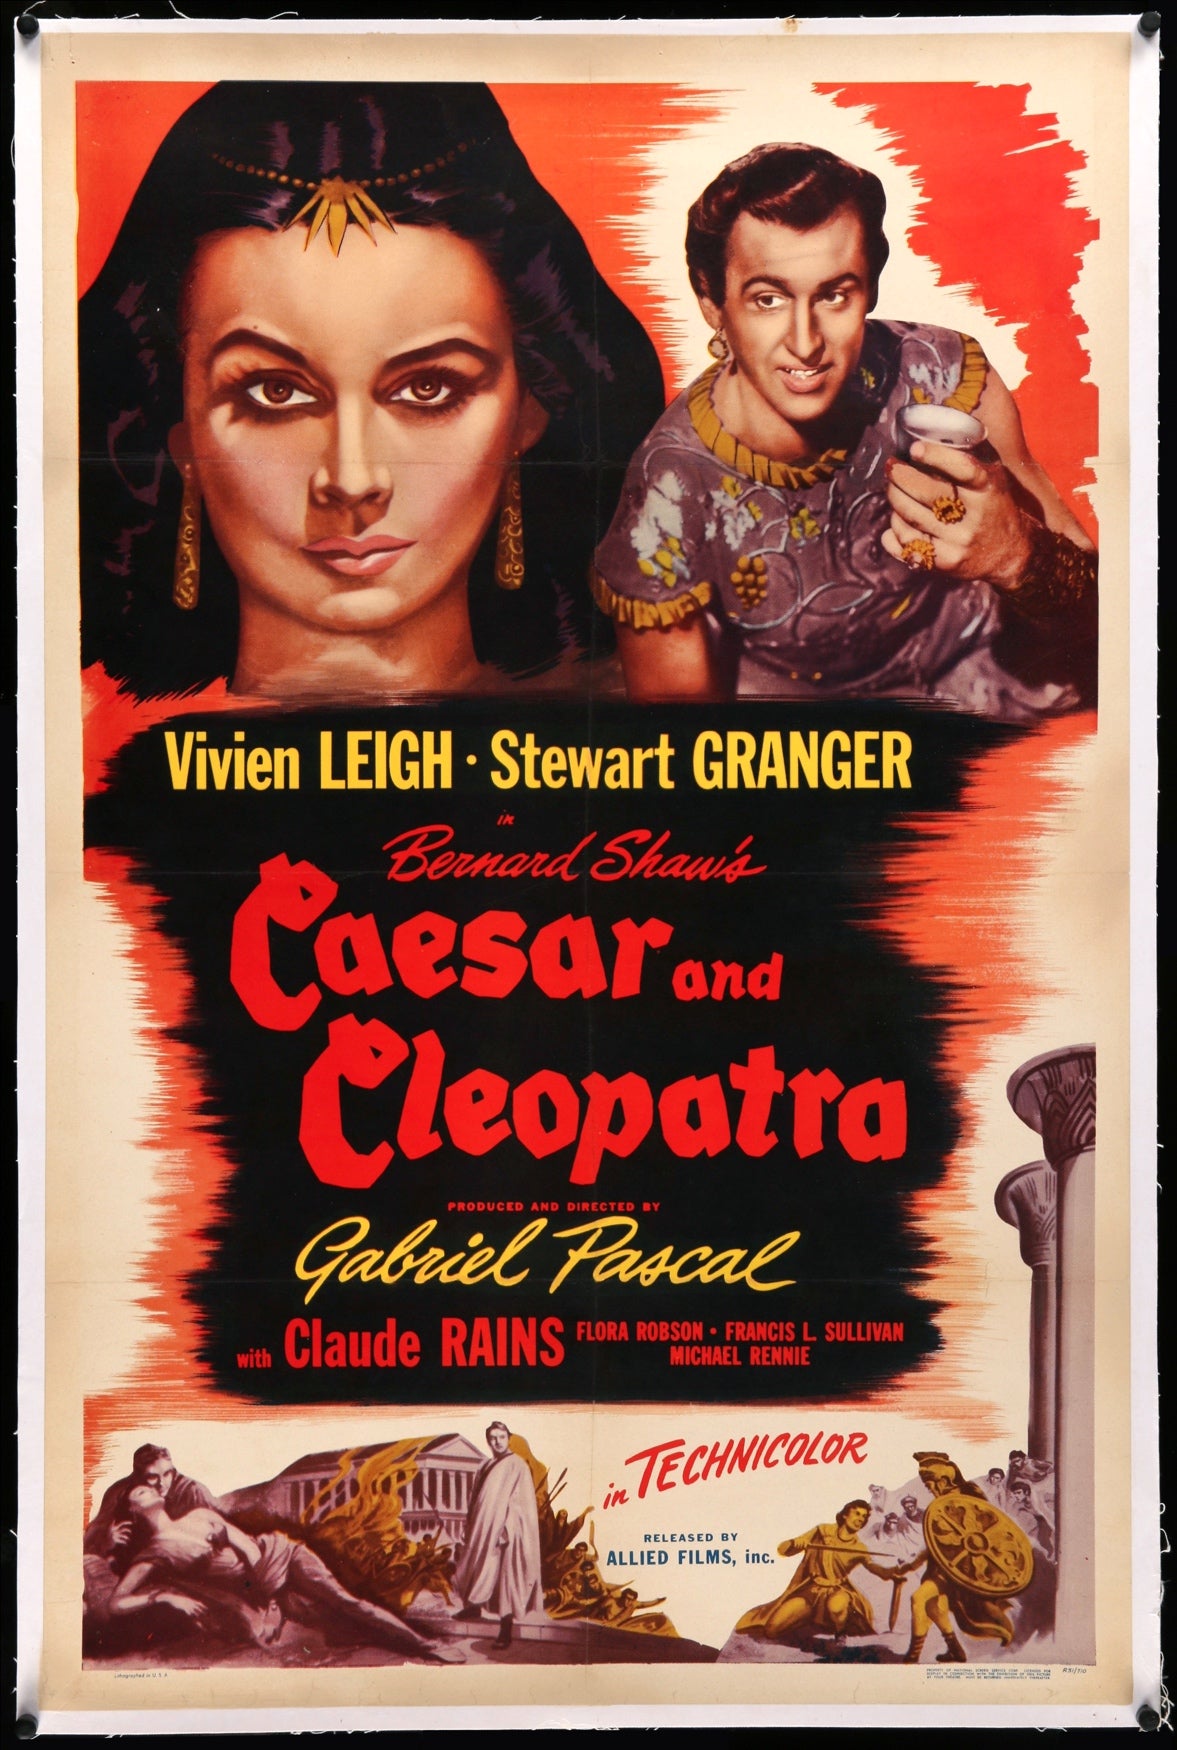 cleopatra 1945